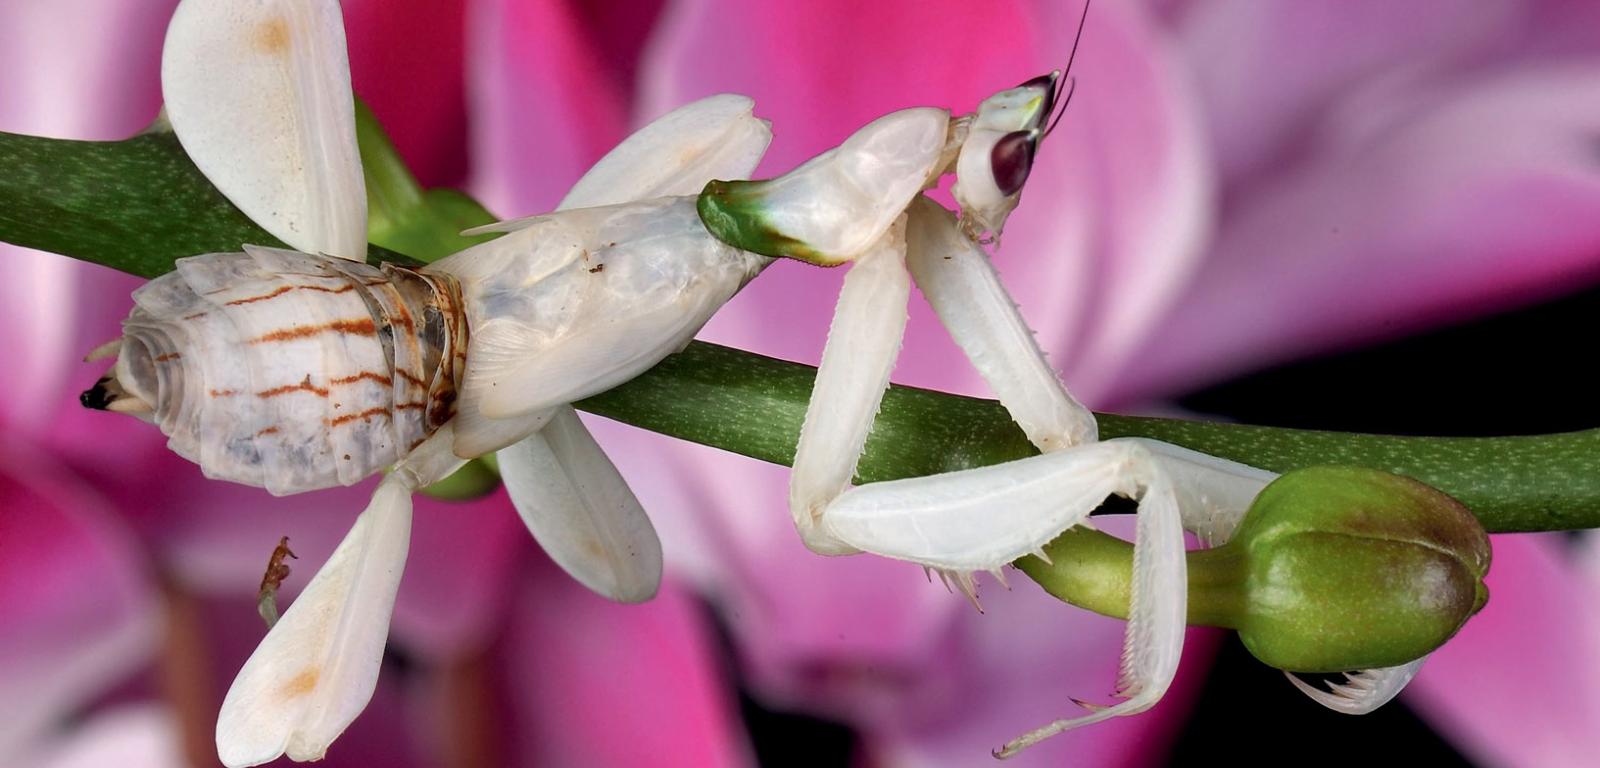 Modliszka storczykowa (Hymenopus coronatus) pochodzi z lasów tropikalnych Azji Południowo-Wschodniej. Przypomina fragmenty kwiatu orchidei.